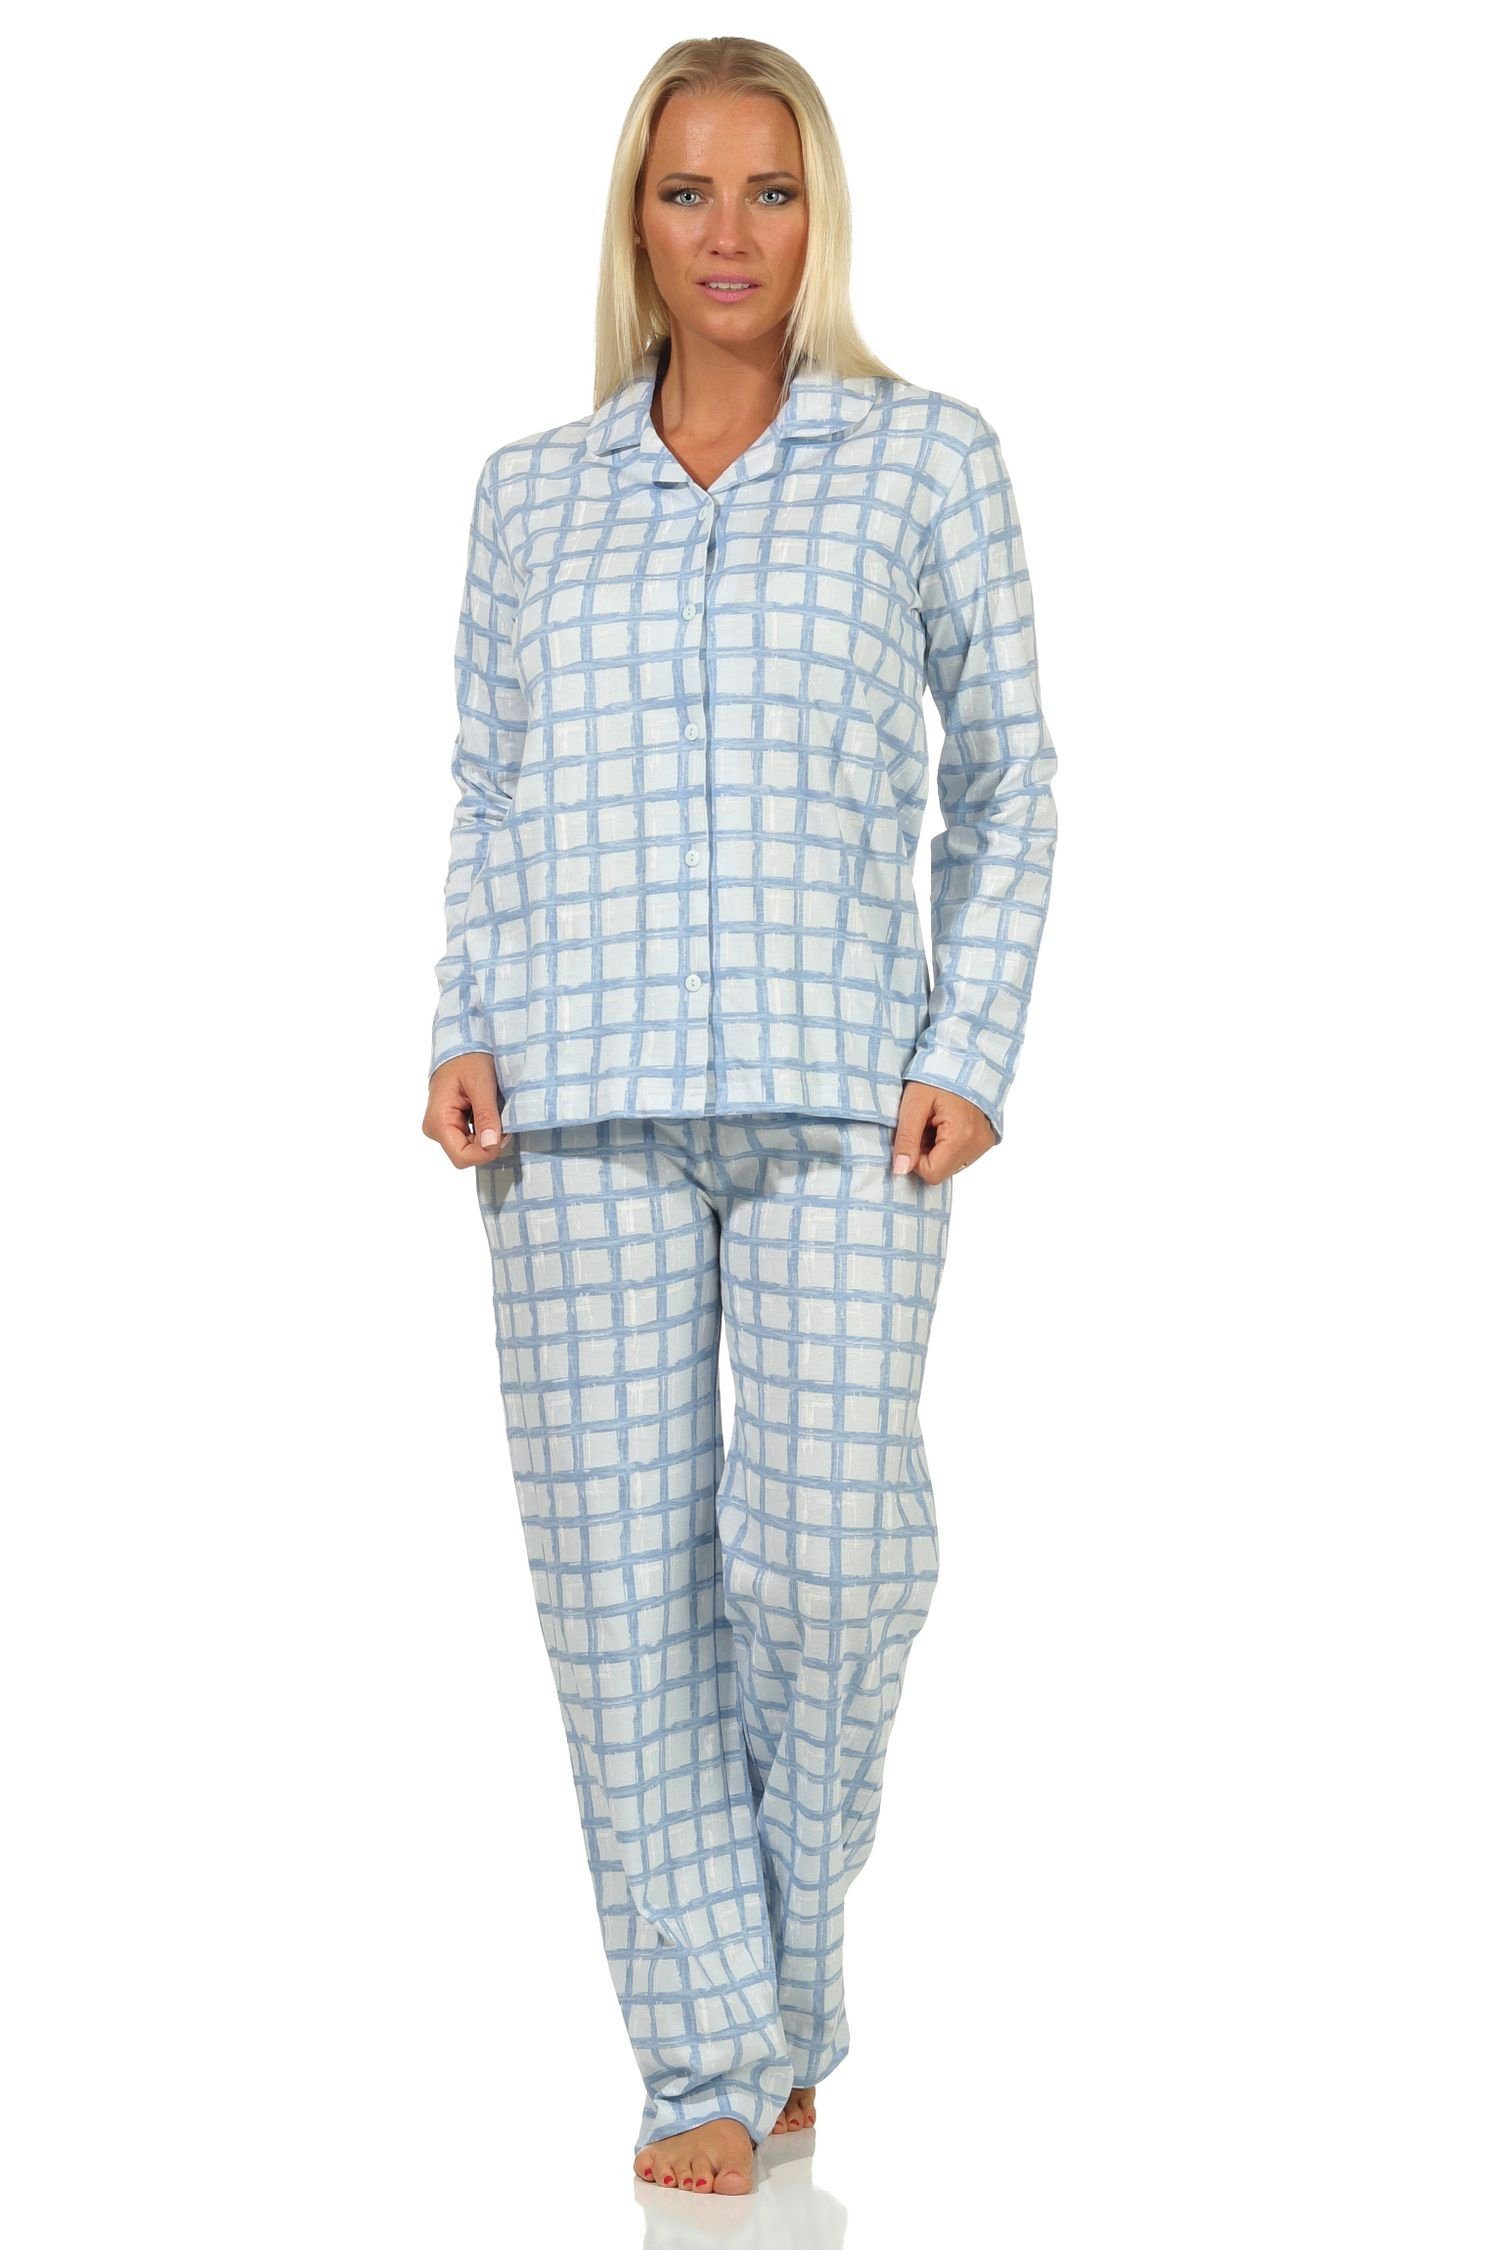 Pyjama aus Normann Jersey Karo Optik Damen in durchknöpfen hellblau zum Pyjama